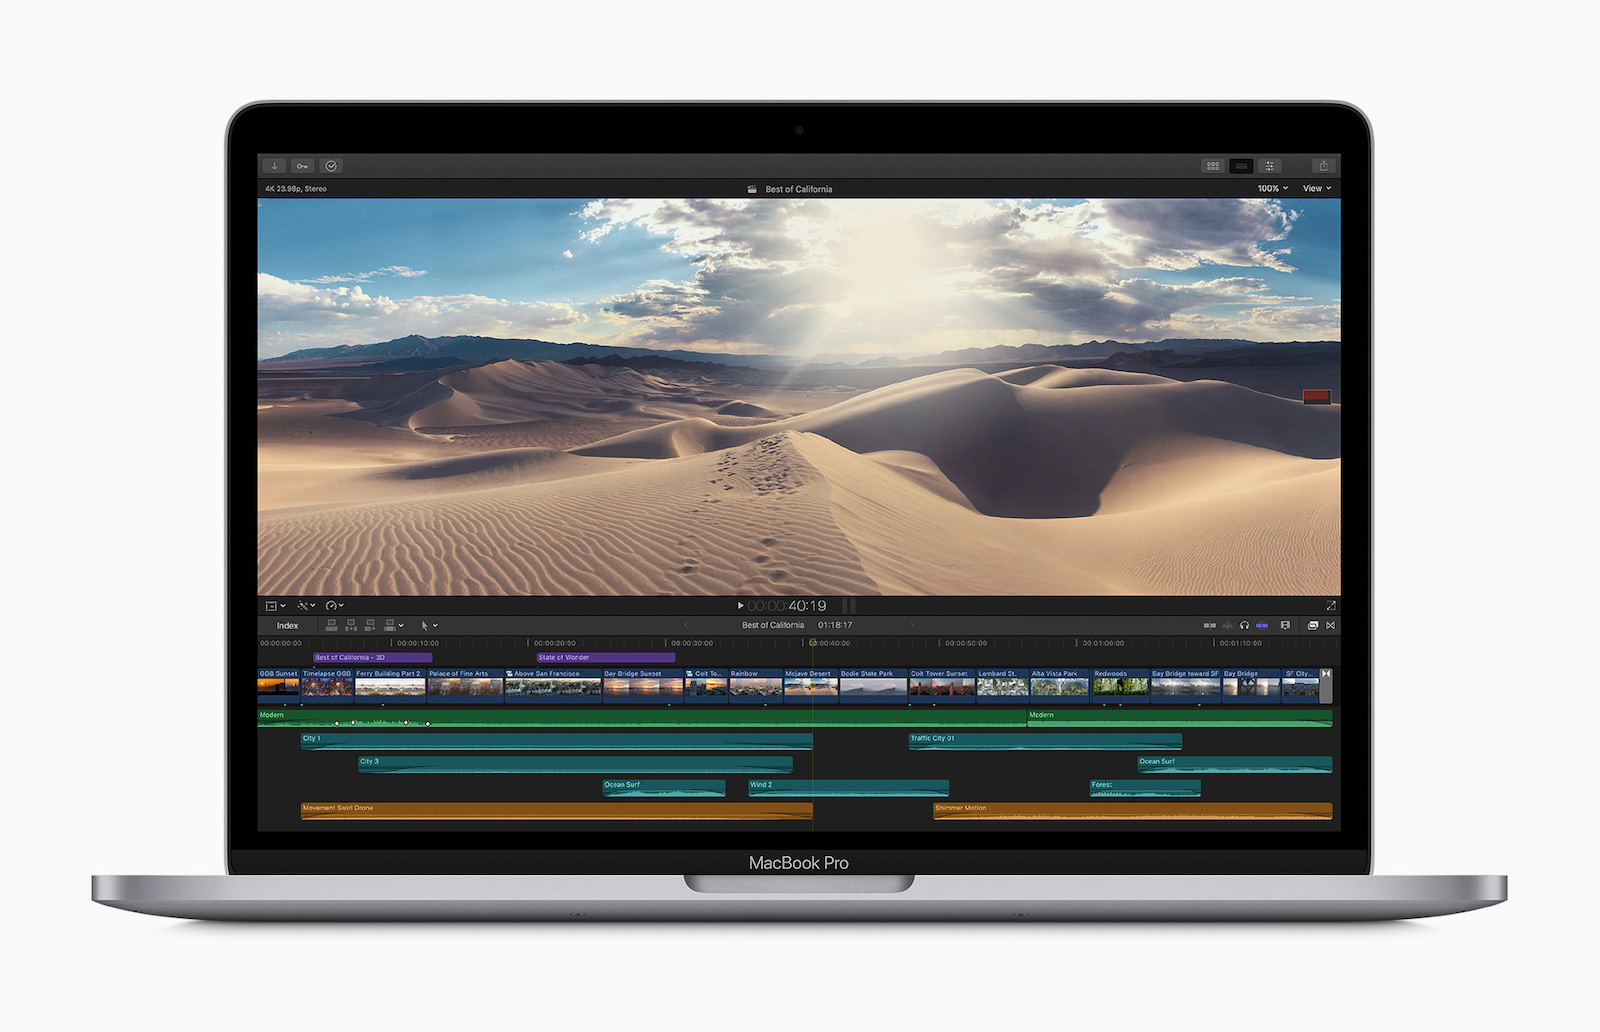 Apple_macbook_pro-13-inch-with-final-cut-pro_screen_05042020.jpg